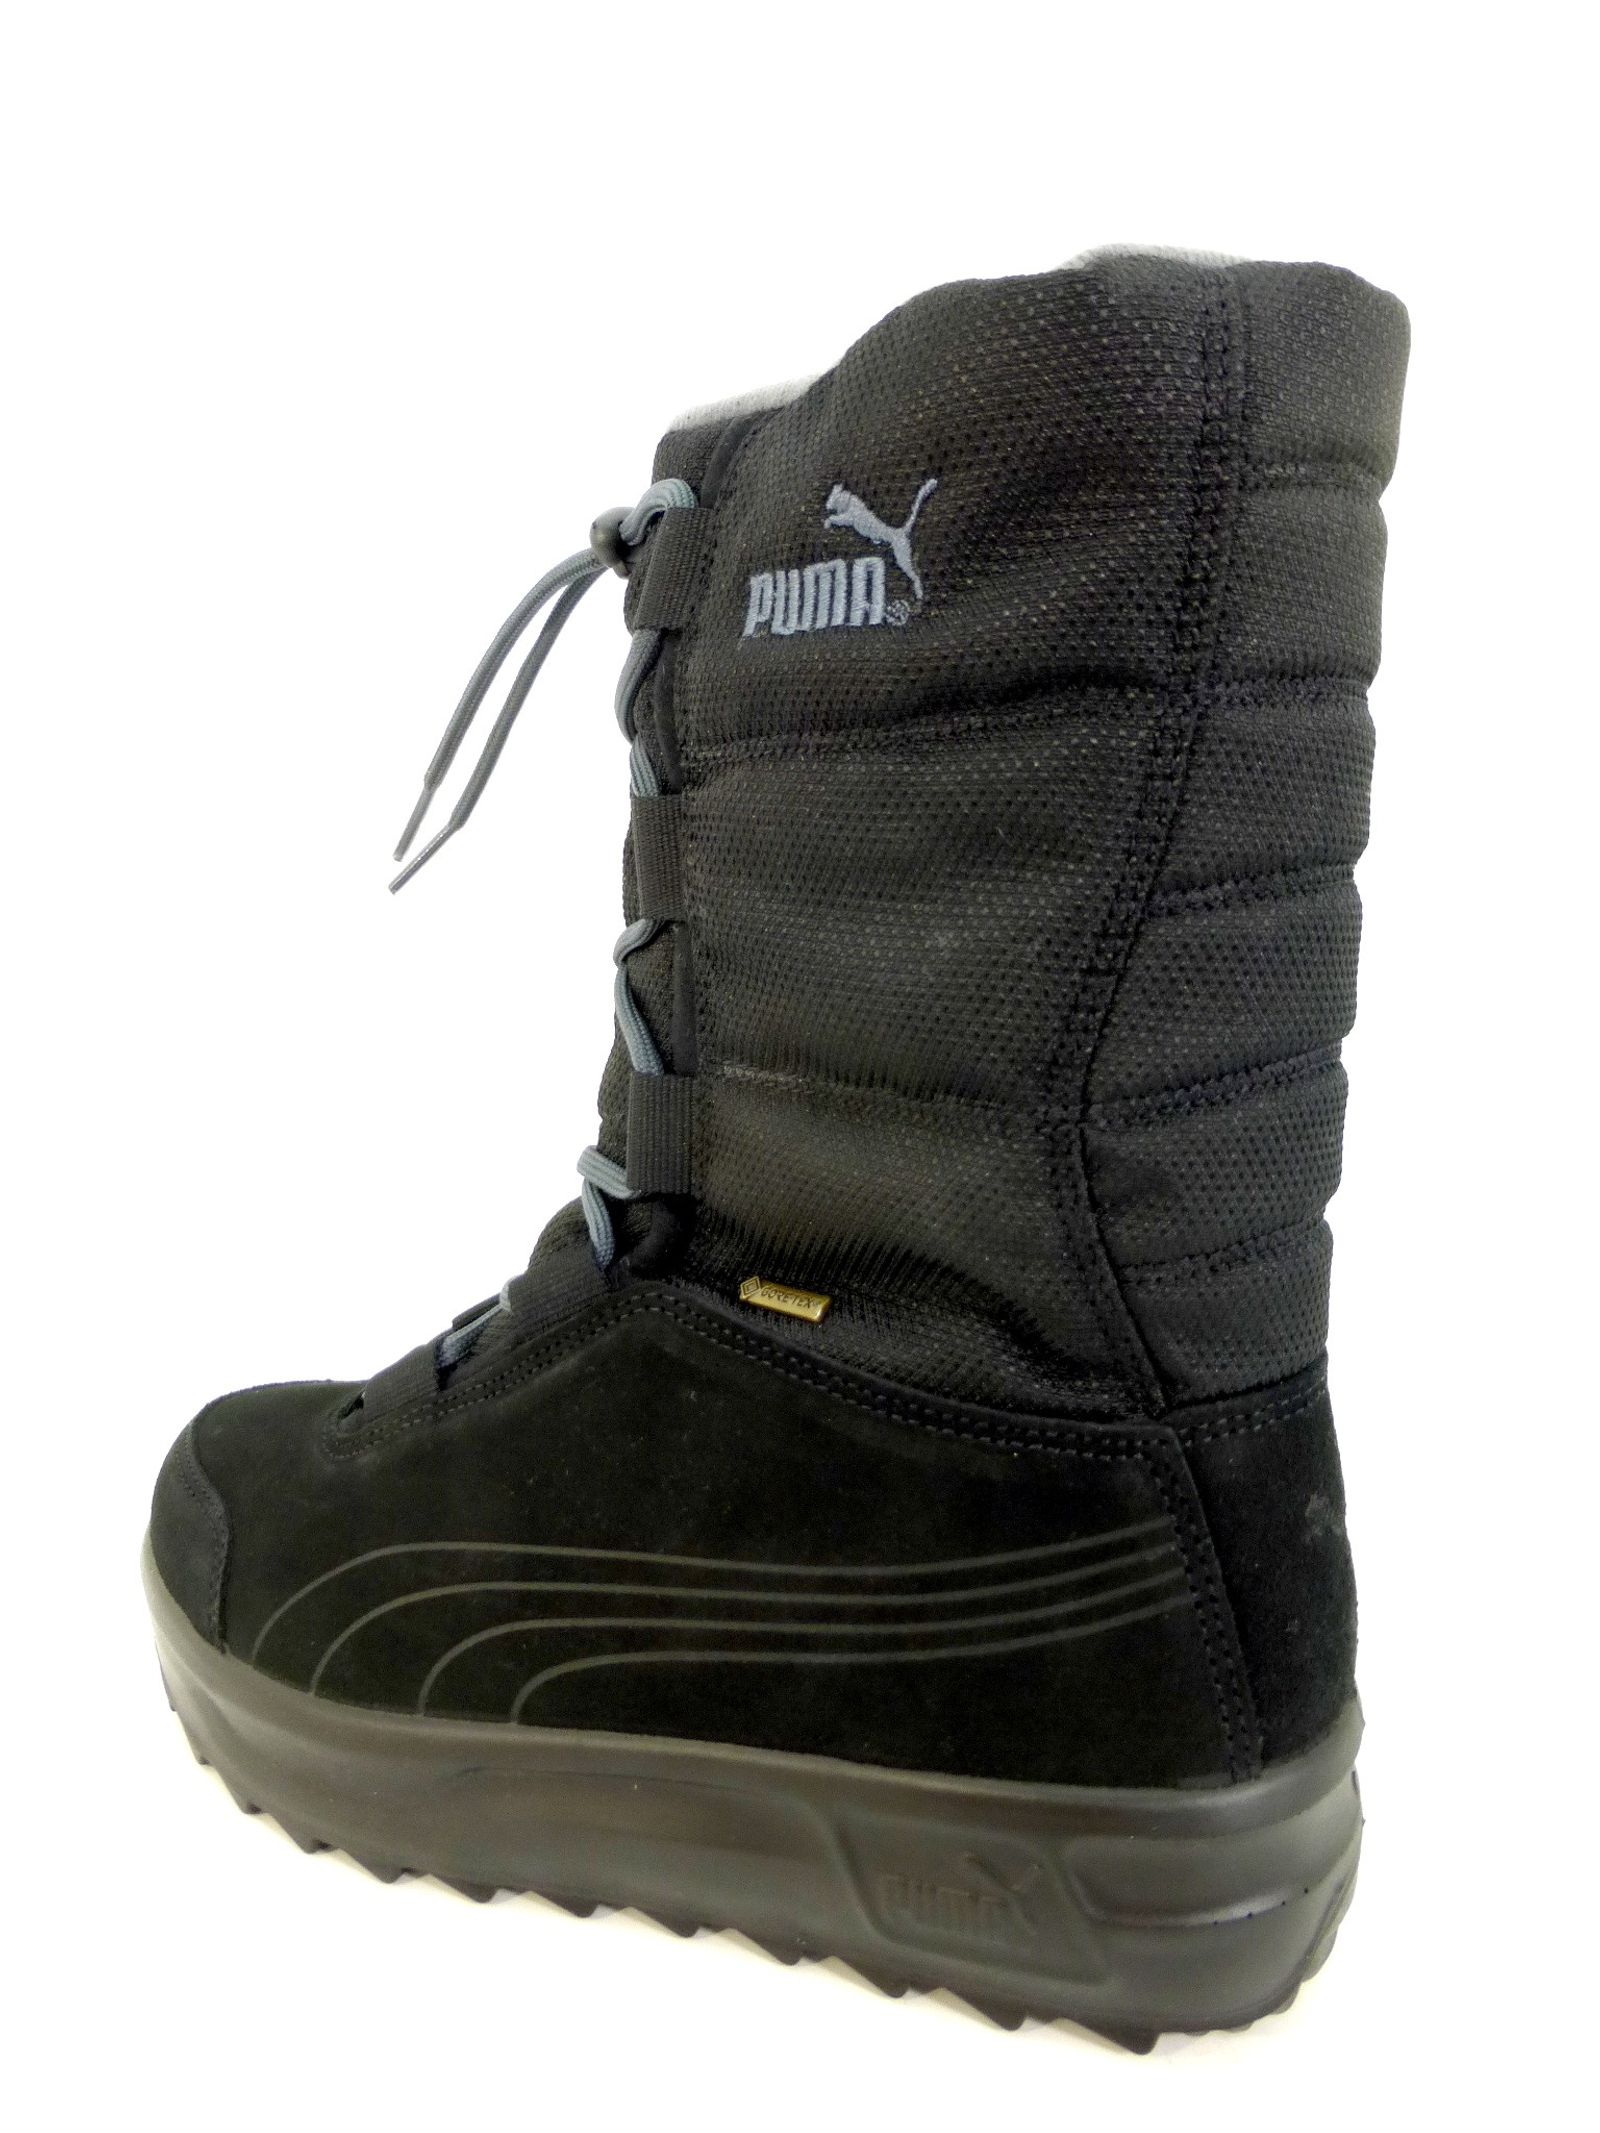 Schuh von Puma, 36